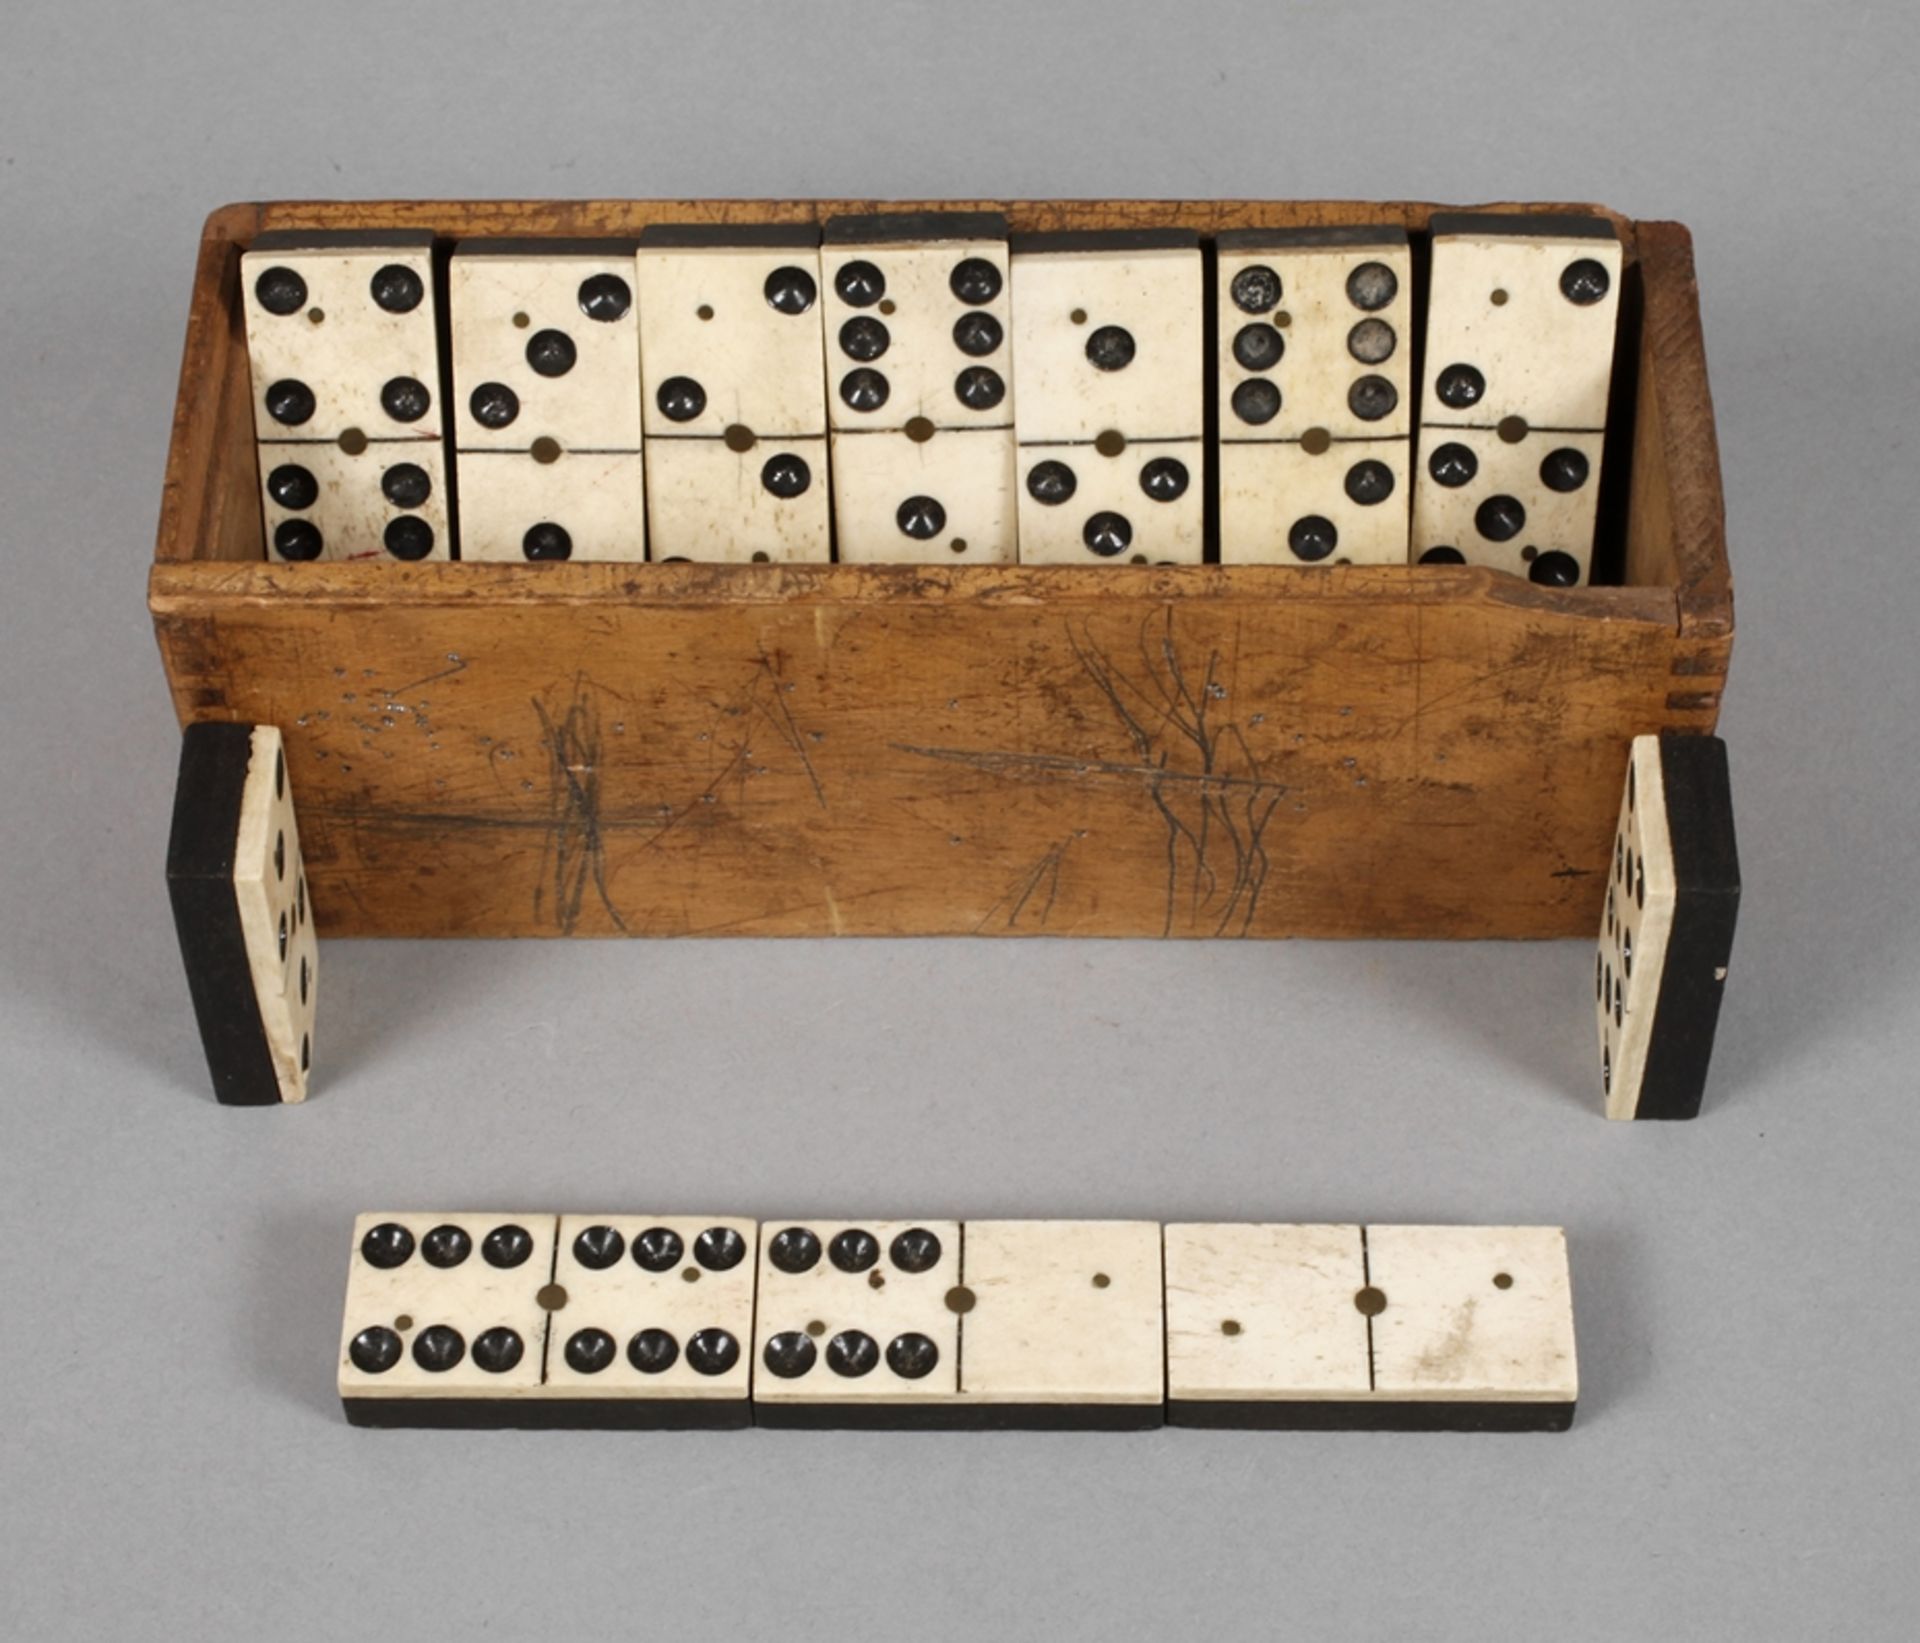 Dominospiel19. Jh., 26 massive Spielsteine aus Bein und Ebenholz, mittels Messingnieten montiert,